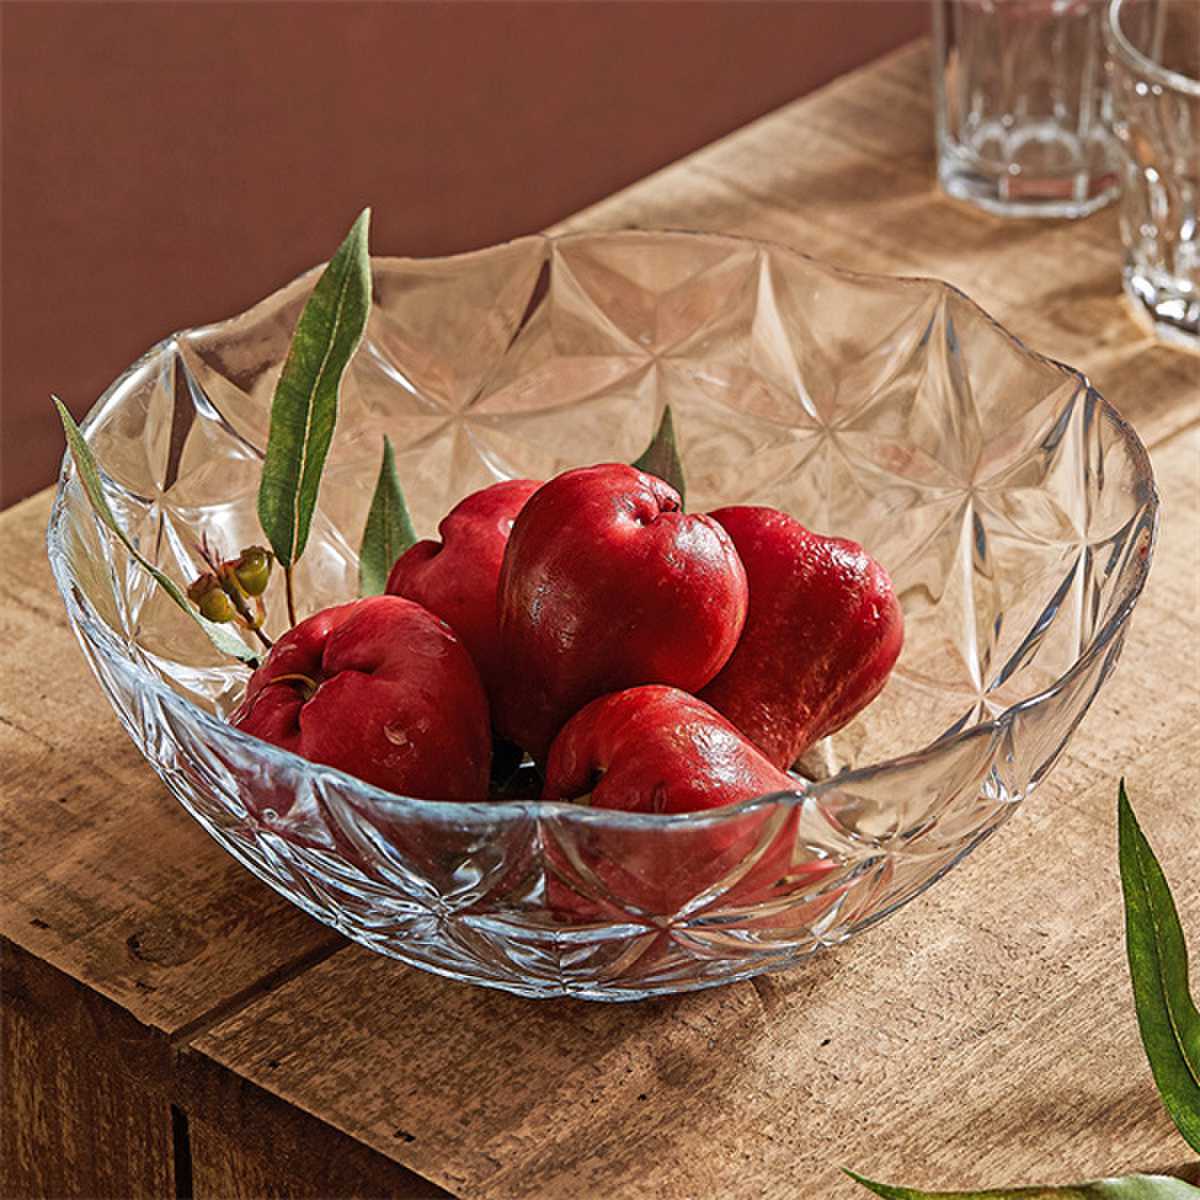 Home fruit glass bowl